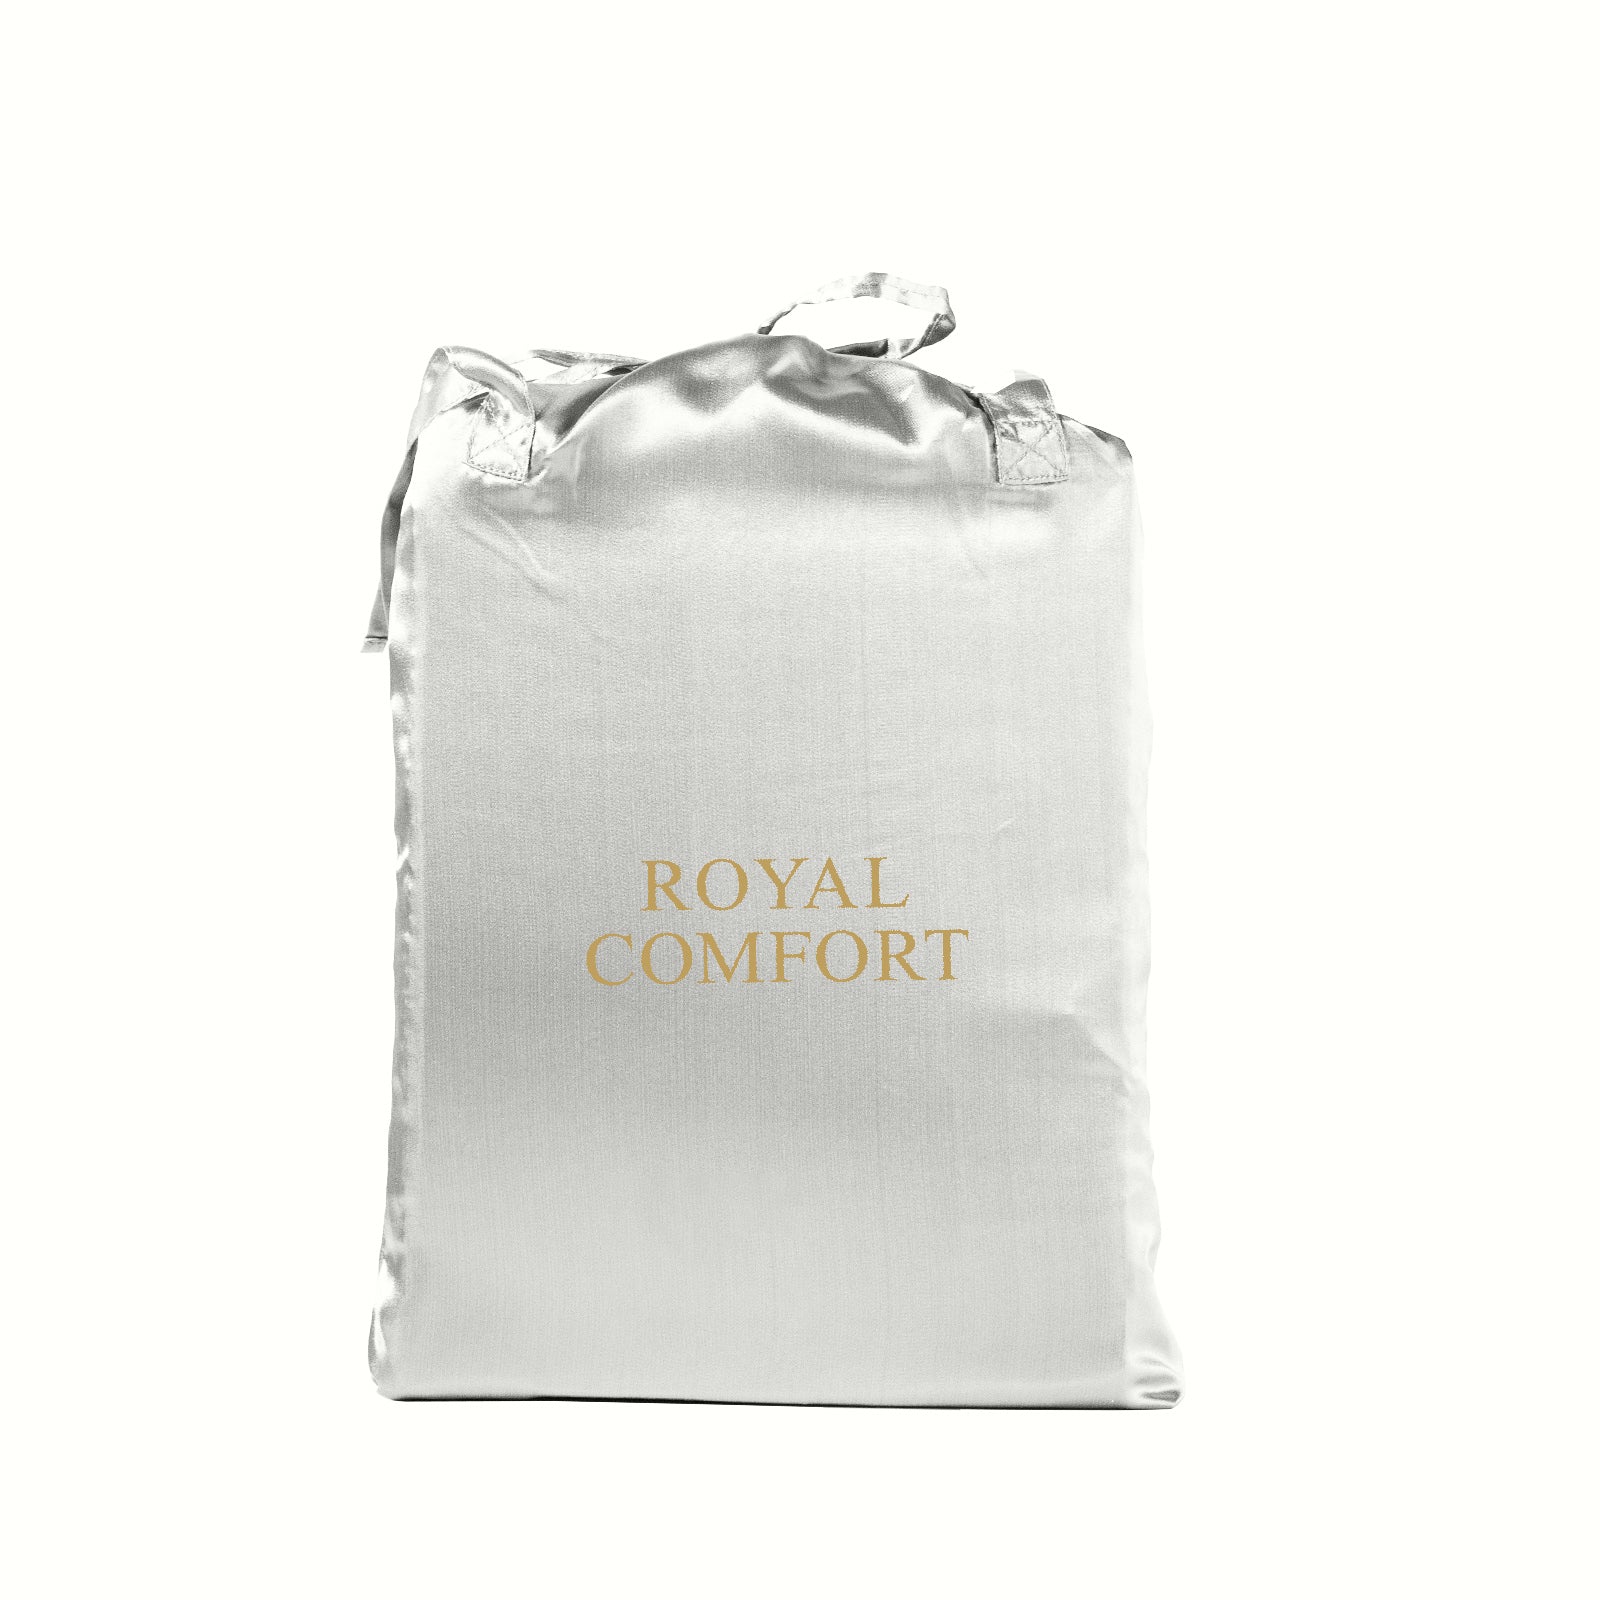 Royal Comfort Satin Sheet Set 3 Piece Fitted Sheet Pillowcase Soft  - King - Silver Deals499